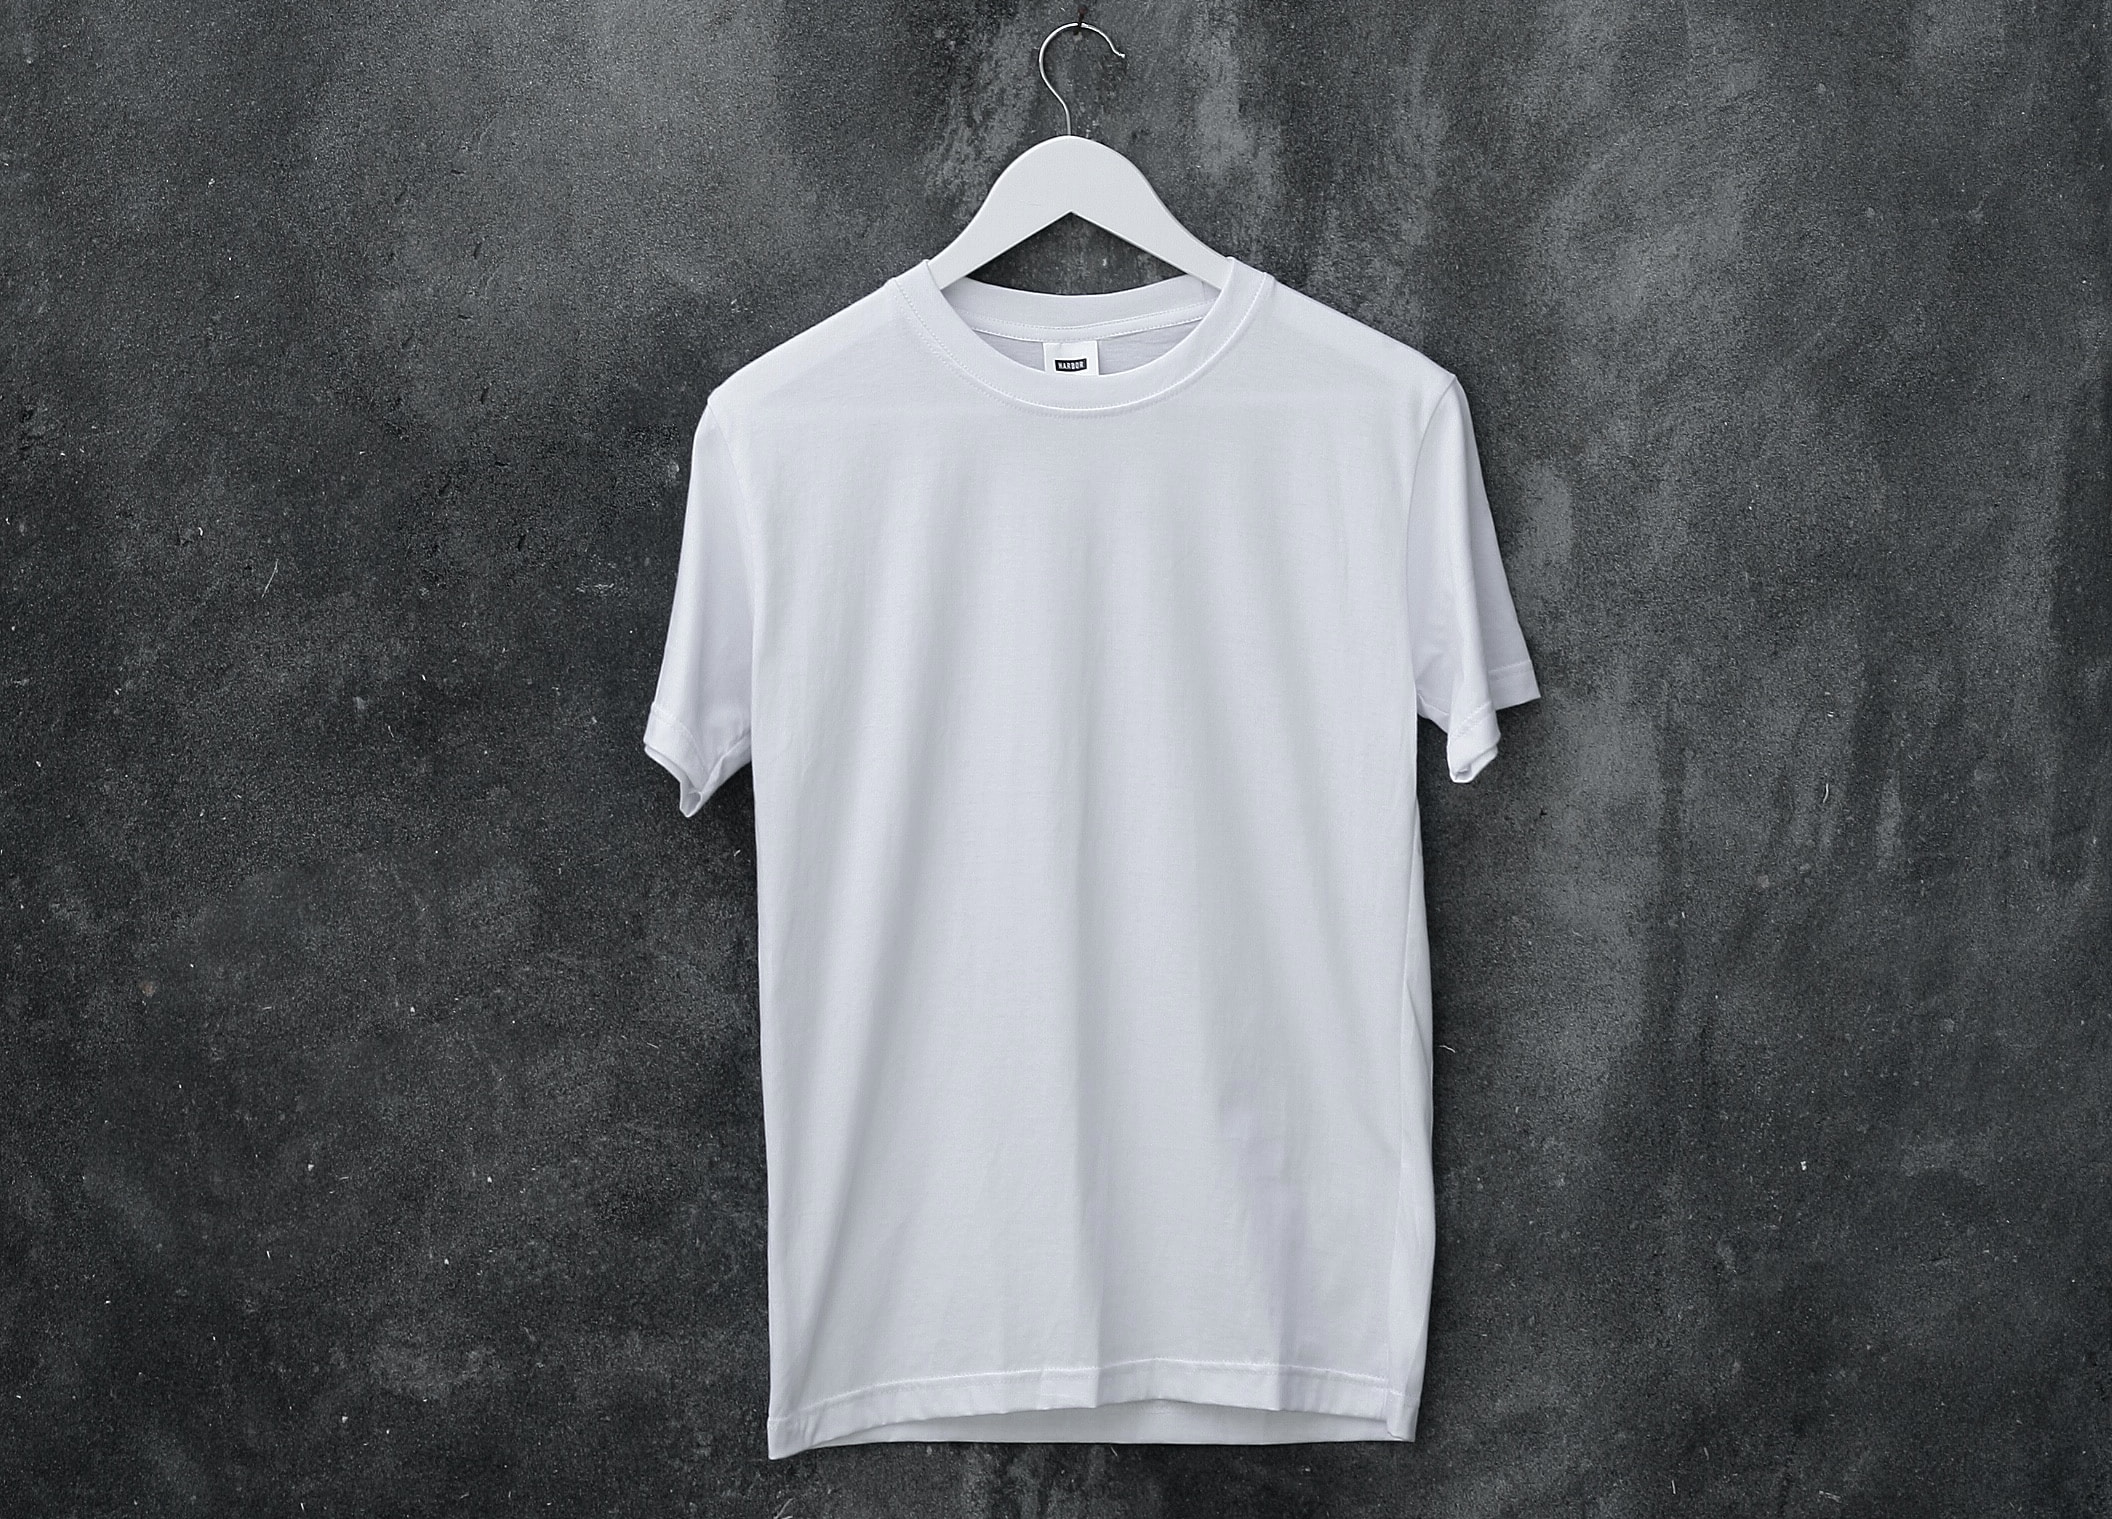 必見 白tシャツの染み抜き方法をマスター 真っ白のまま着続ける為に